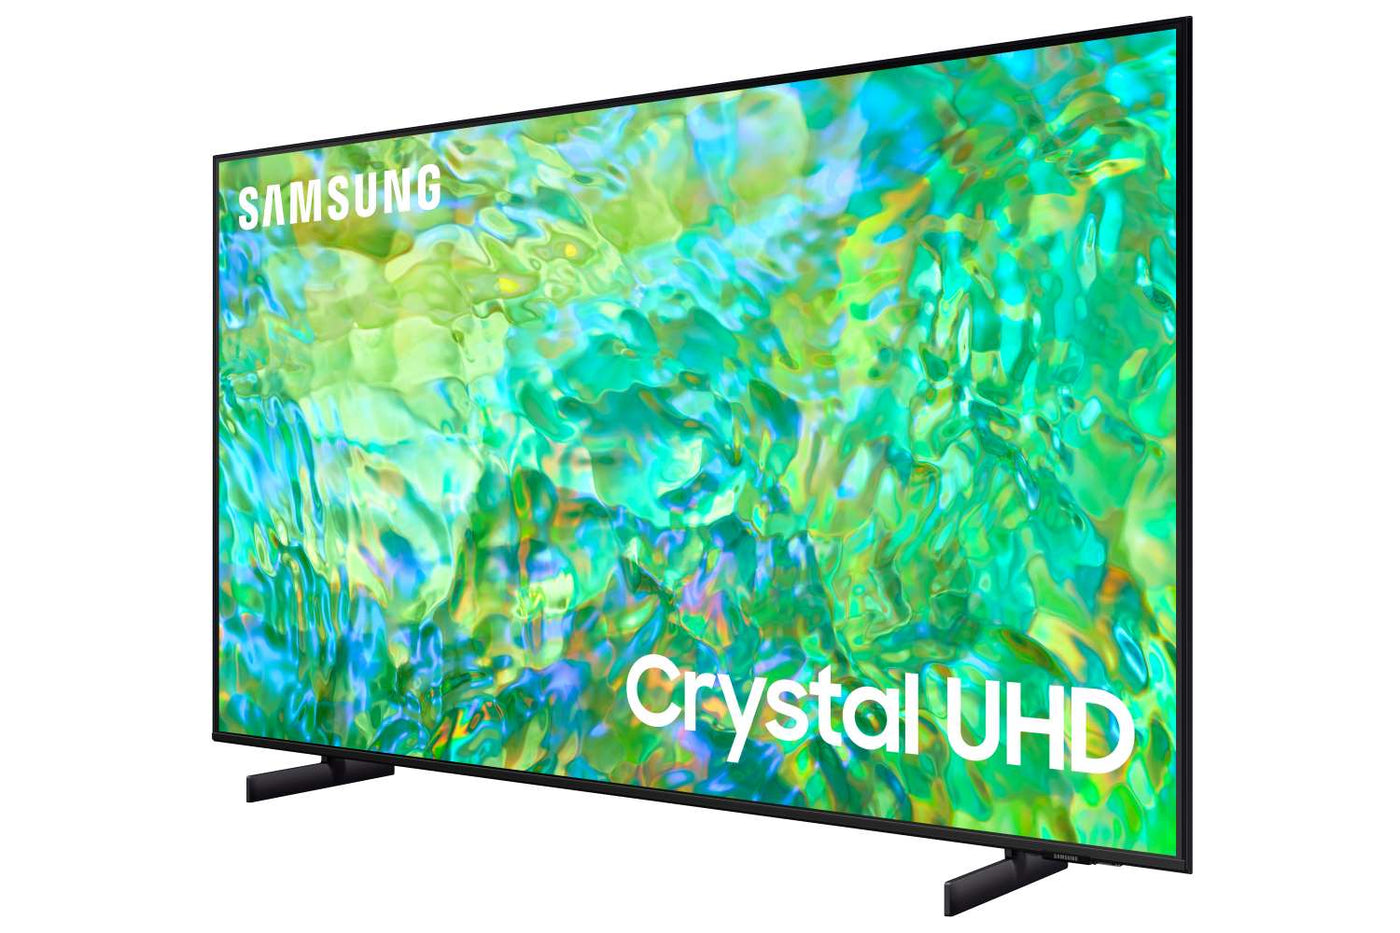 Télévision intelligente DEL de 40 po à pleine HD de Samsung